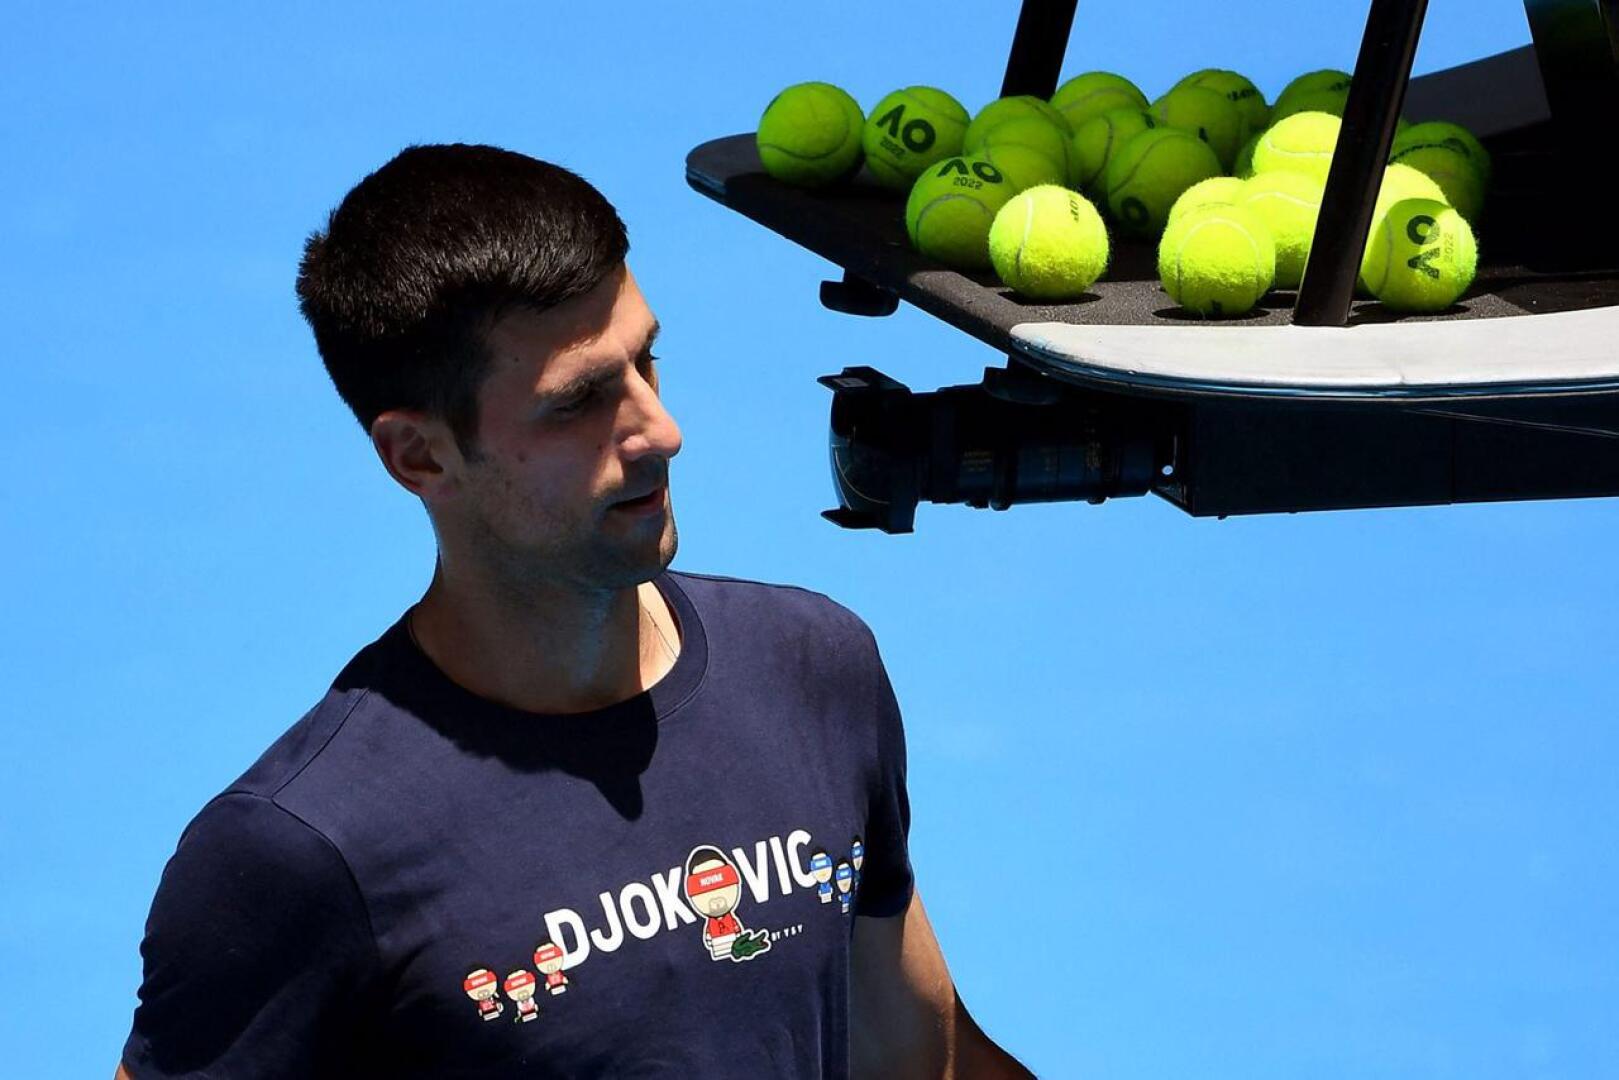 Tennistähti Novak Djokovic myöntää, että haastattelun antaminen oli häneltä virhearvio. Haastattelu tehtiin tennistapahtumassa.